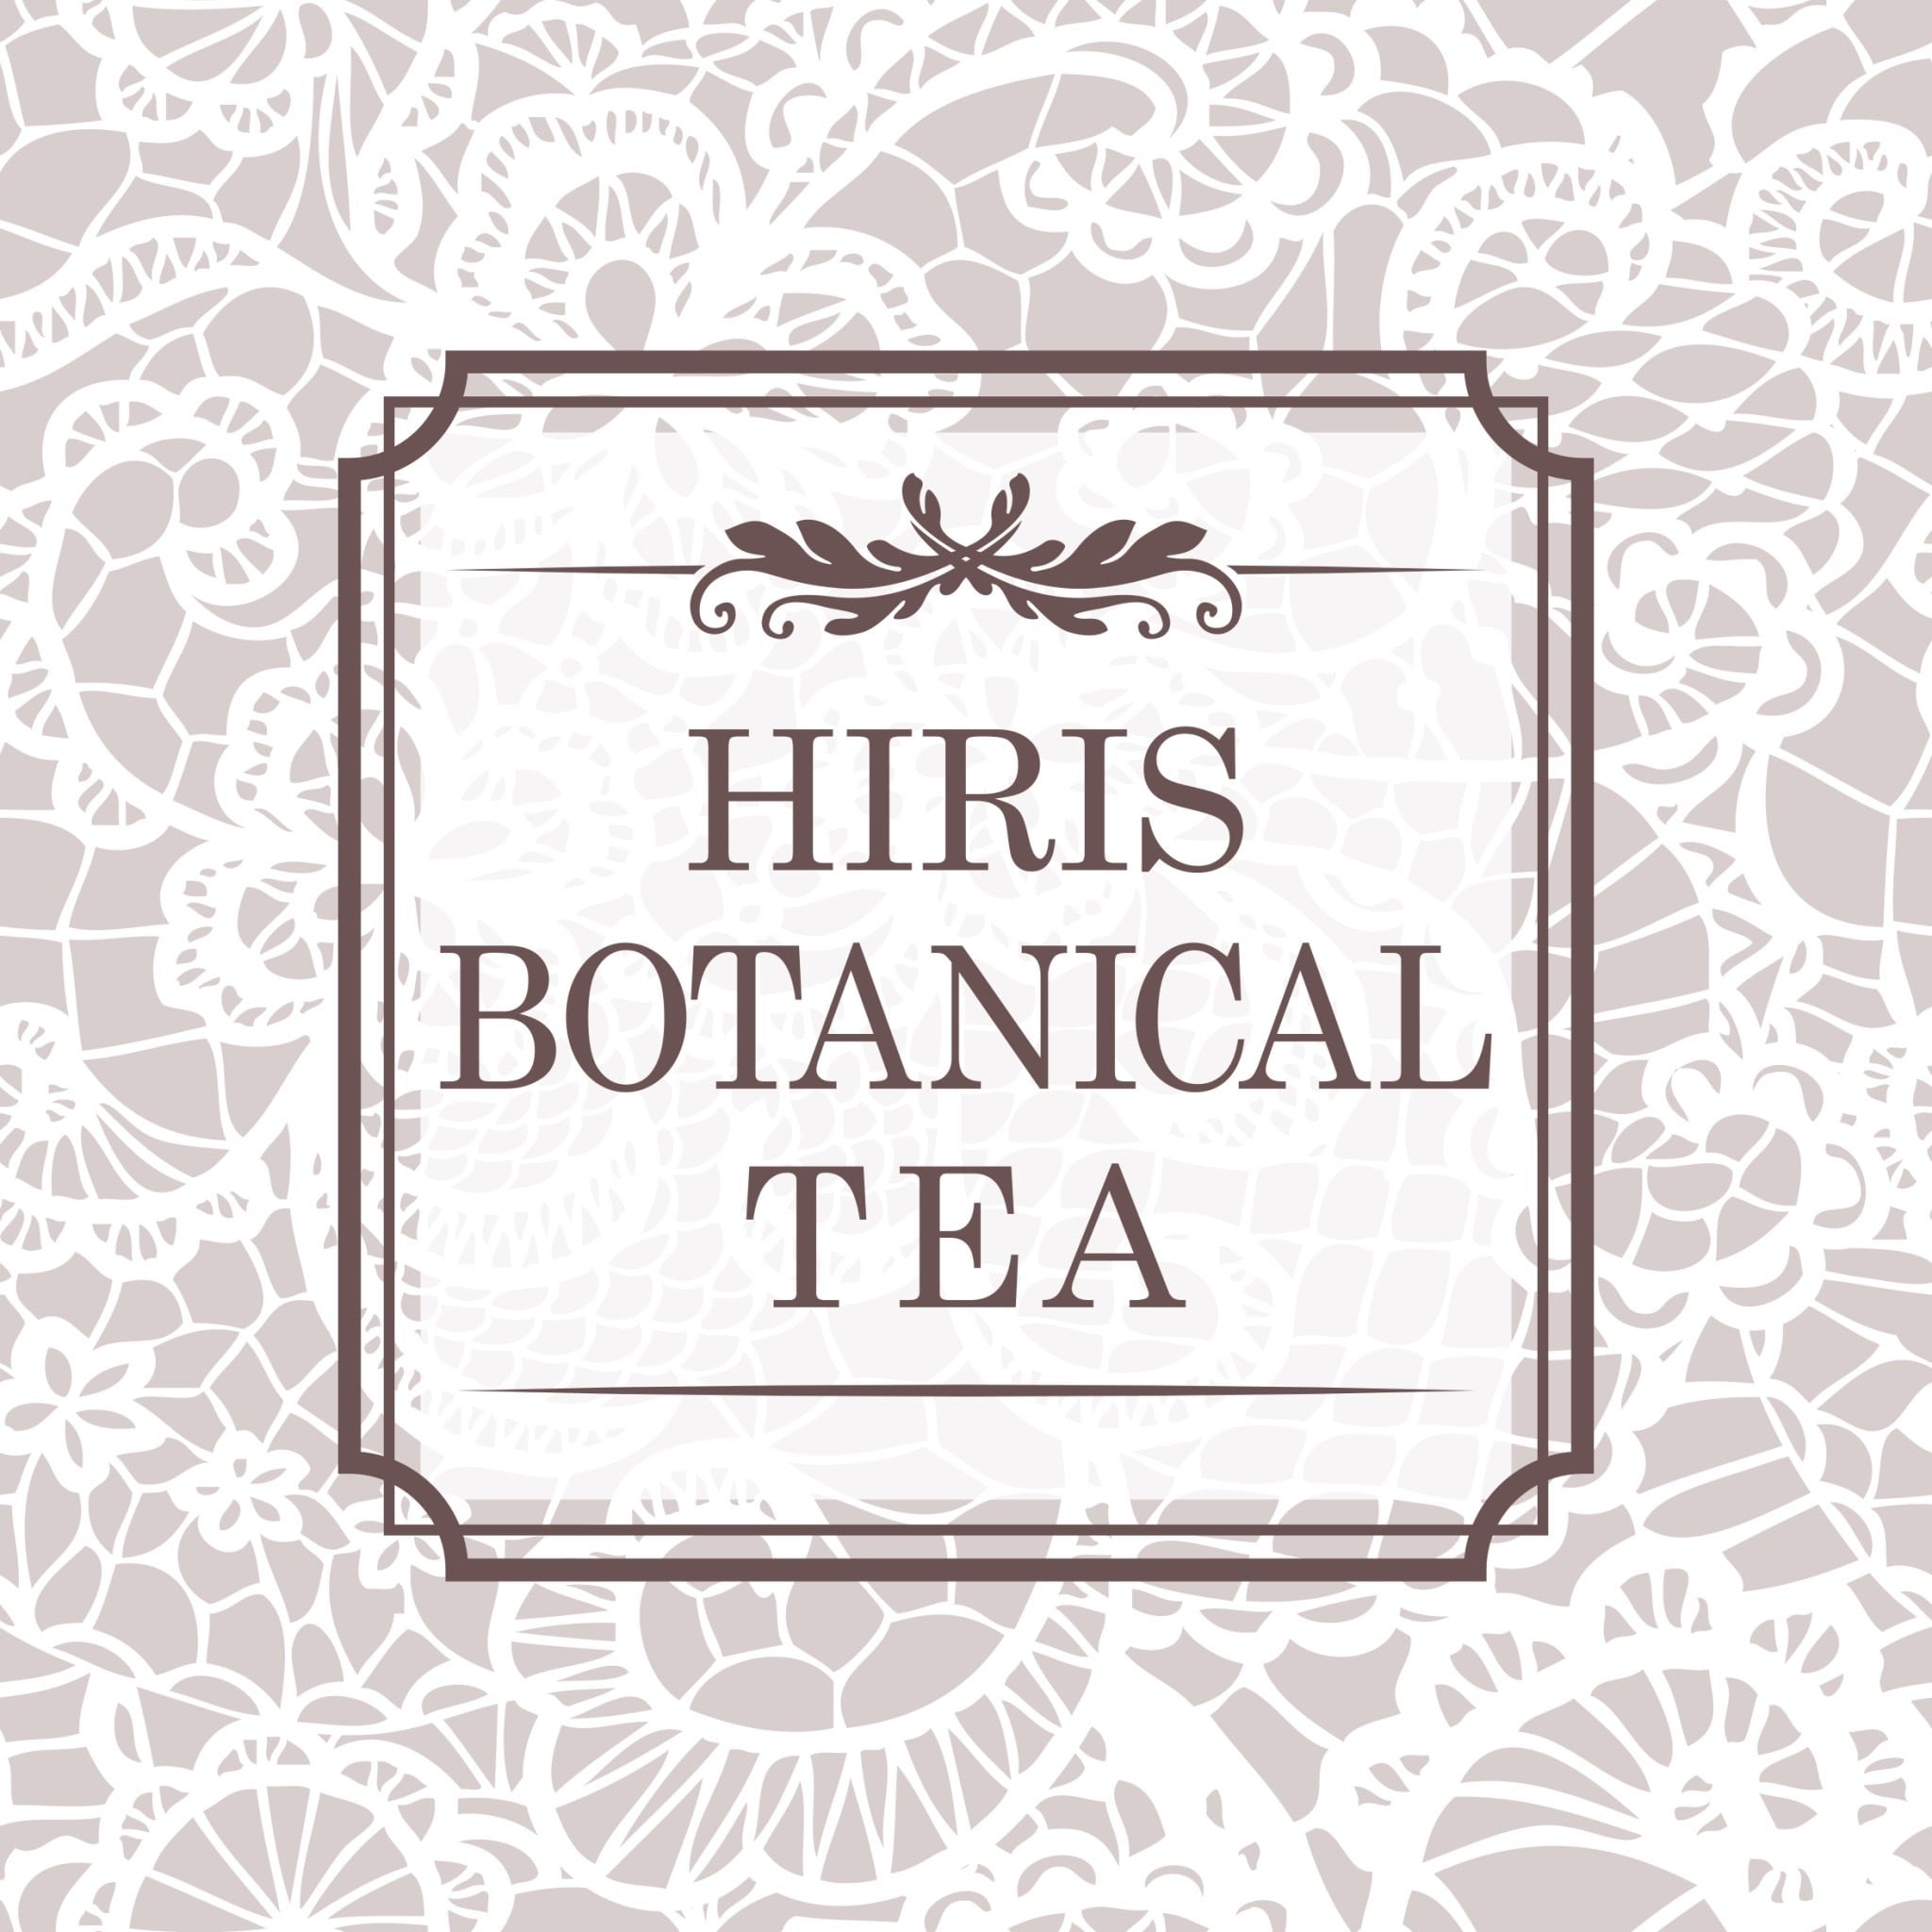 HIRIS BOTANICAL TEA